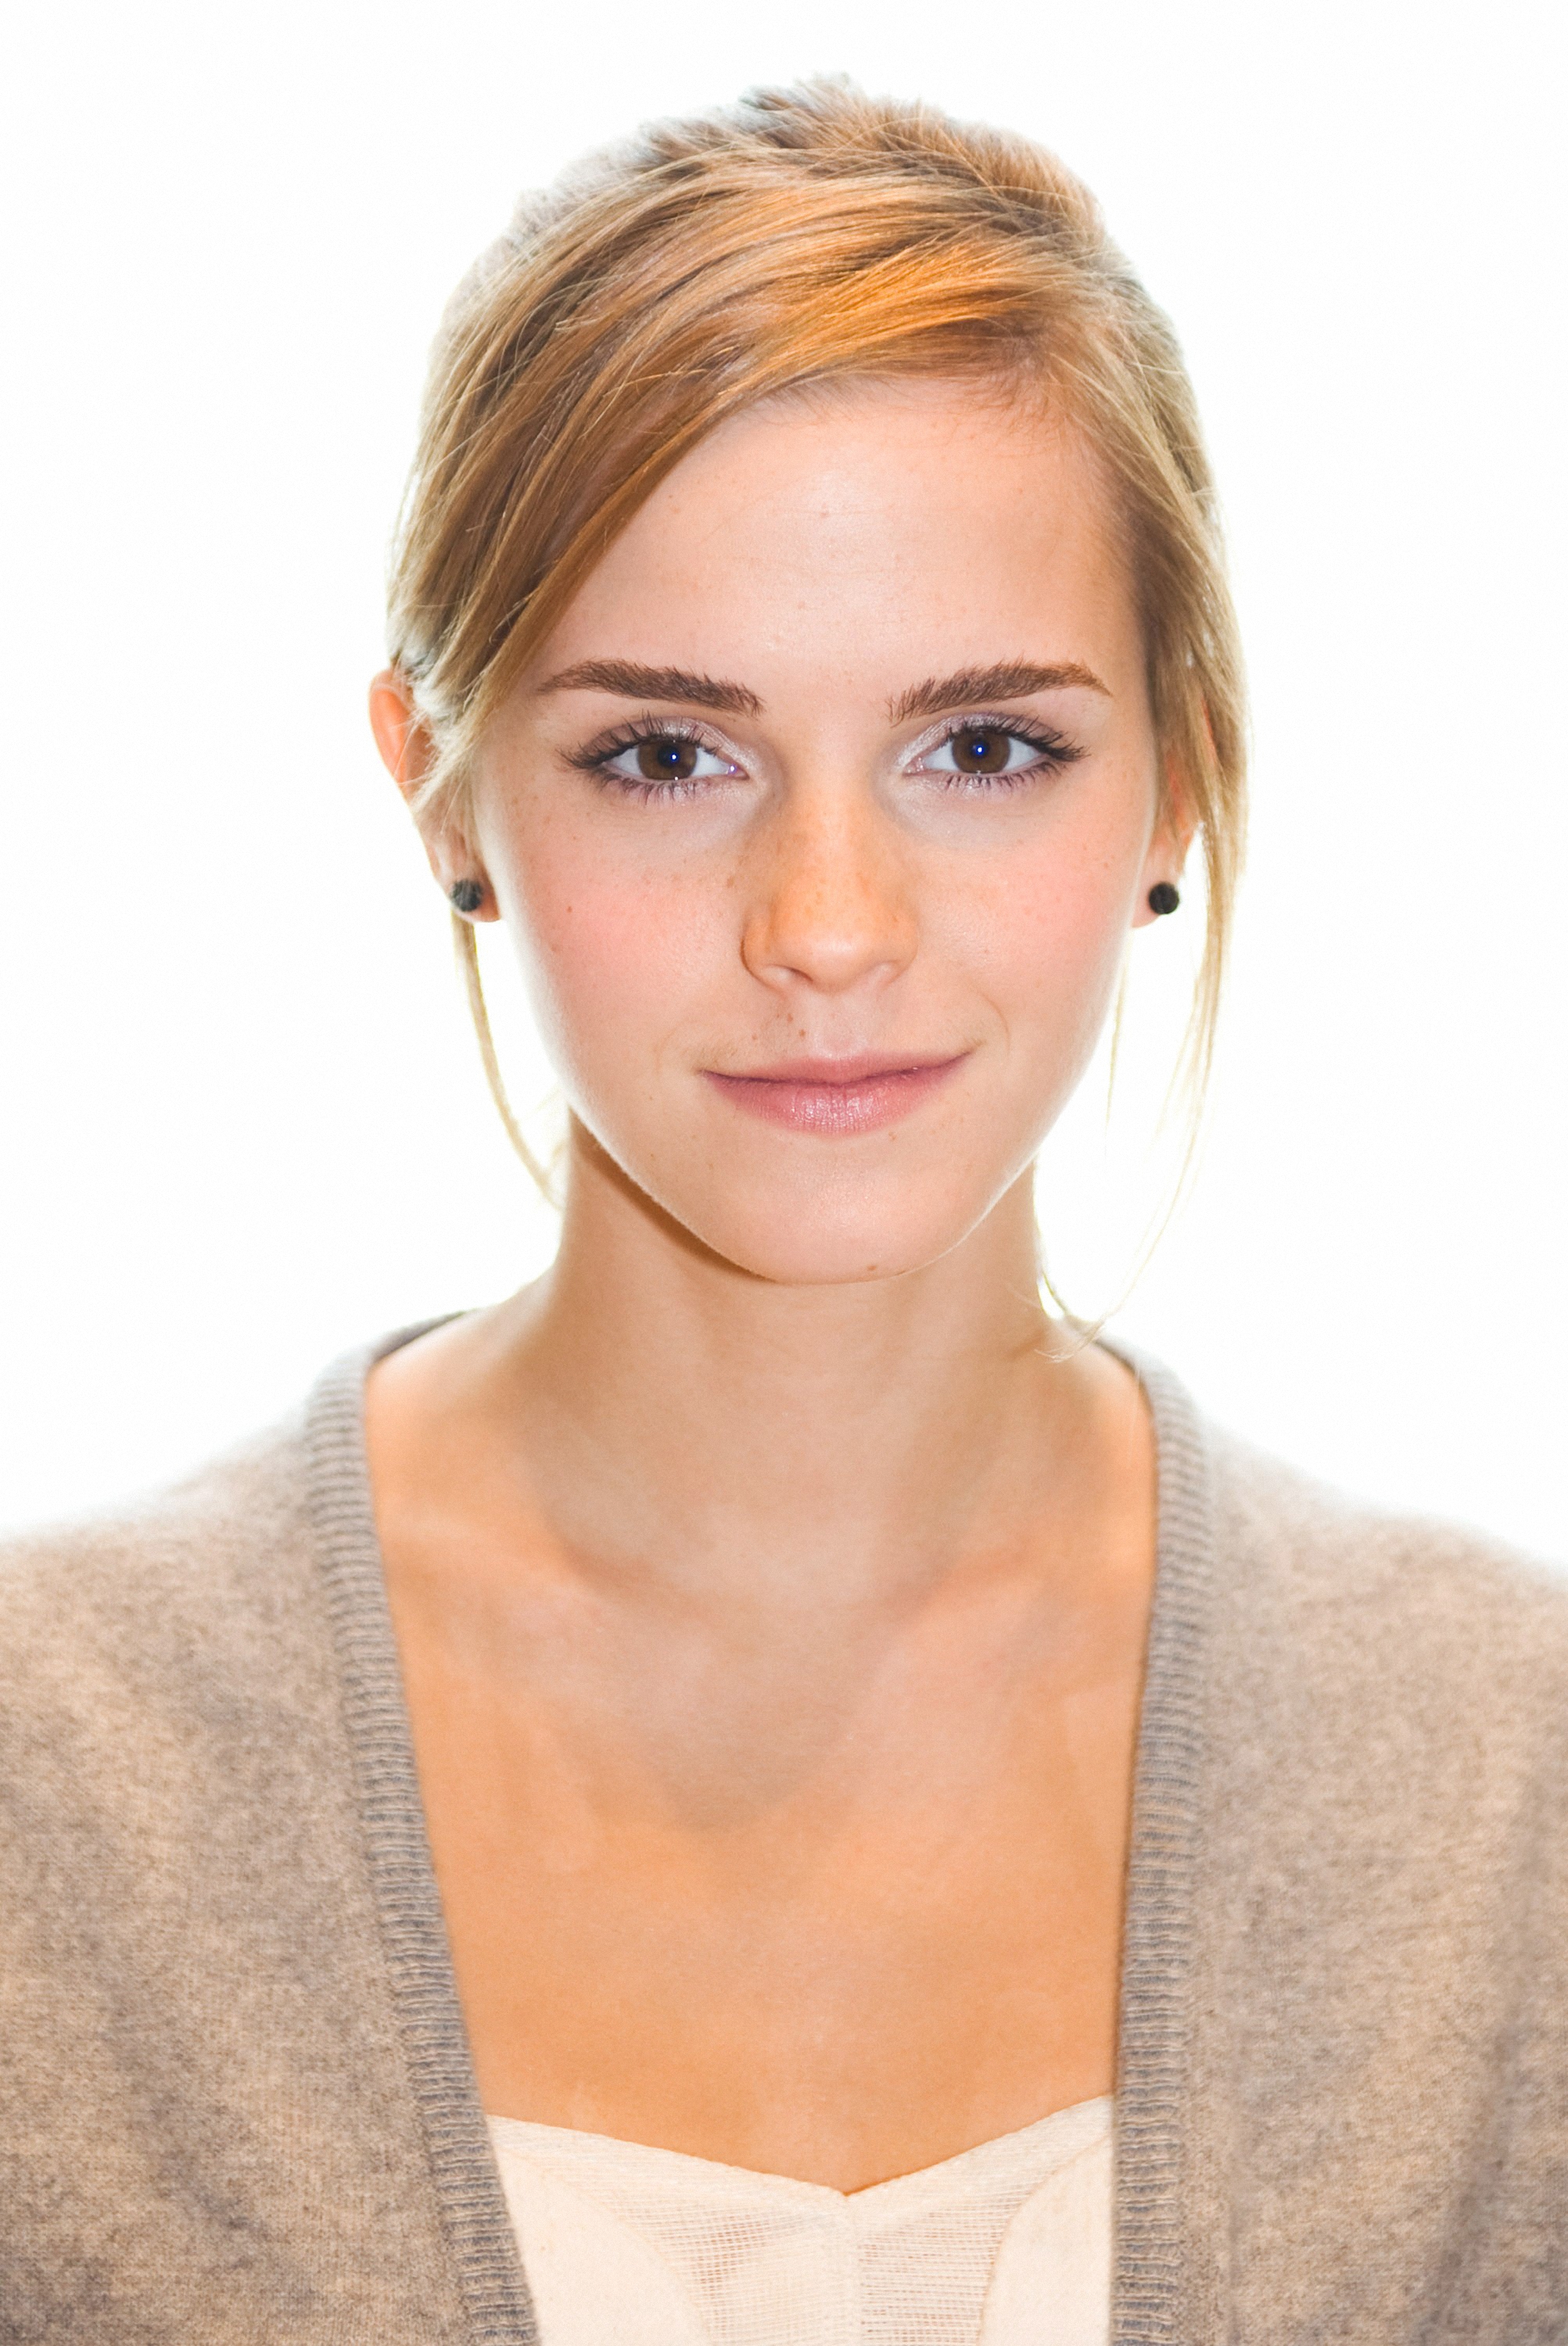 General photo of Emma Watson